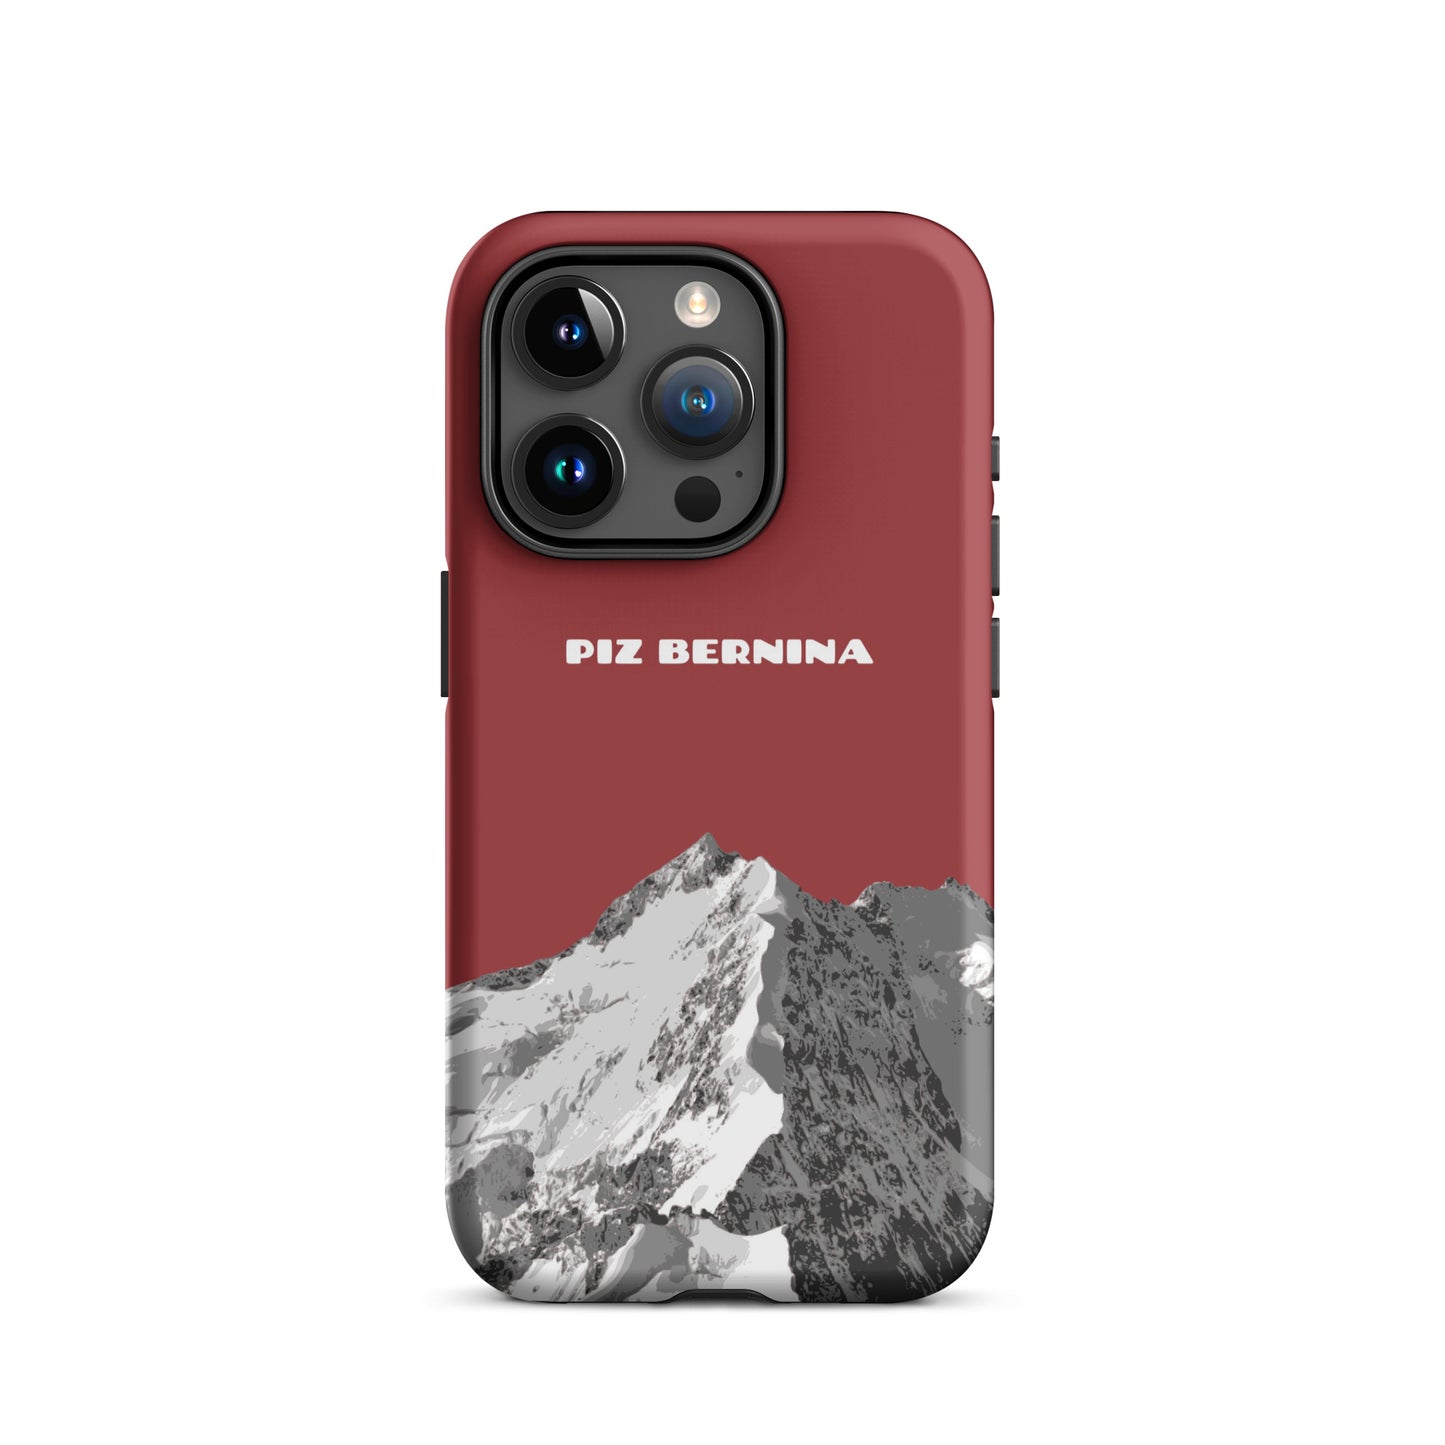 Hülle für das iPhone 15 Pro von Apple in der Farbe Rot, dass den Piz Bernina in Graubünden zeigt.